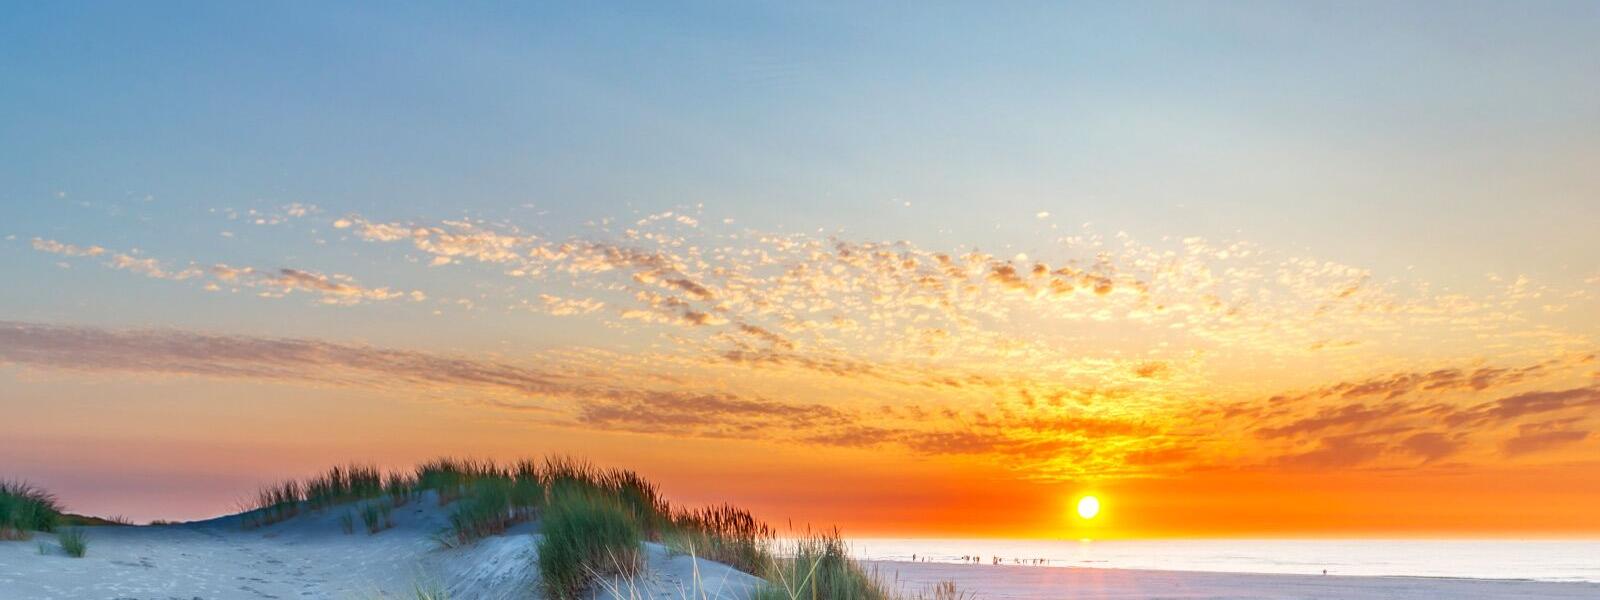 Sonnenuntergang auf der nordfriesischen Insel Sylt